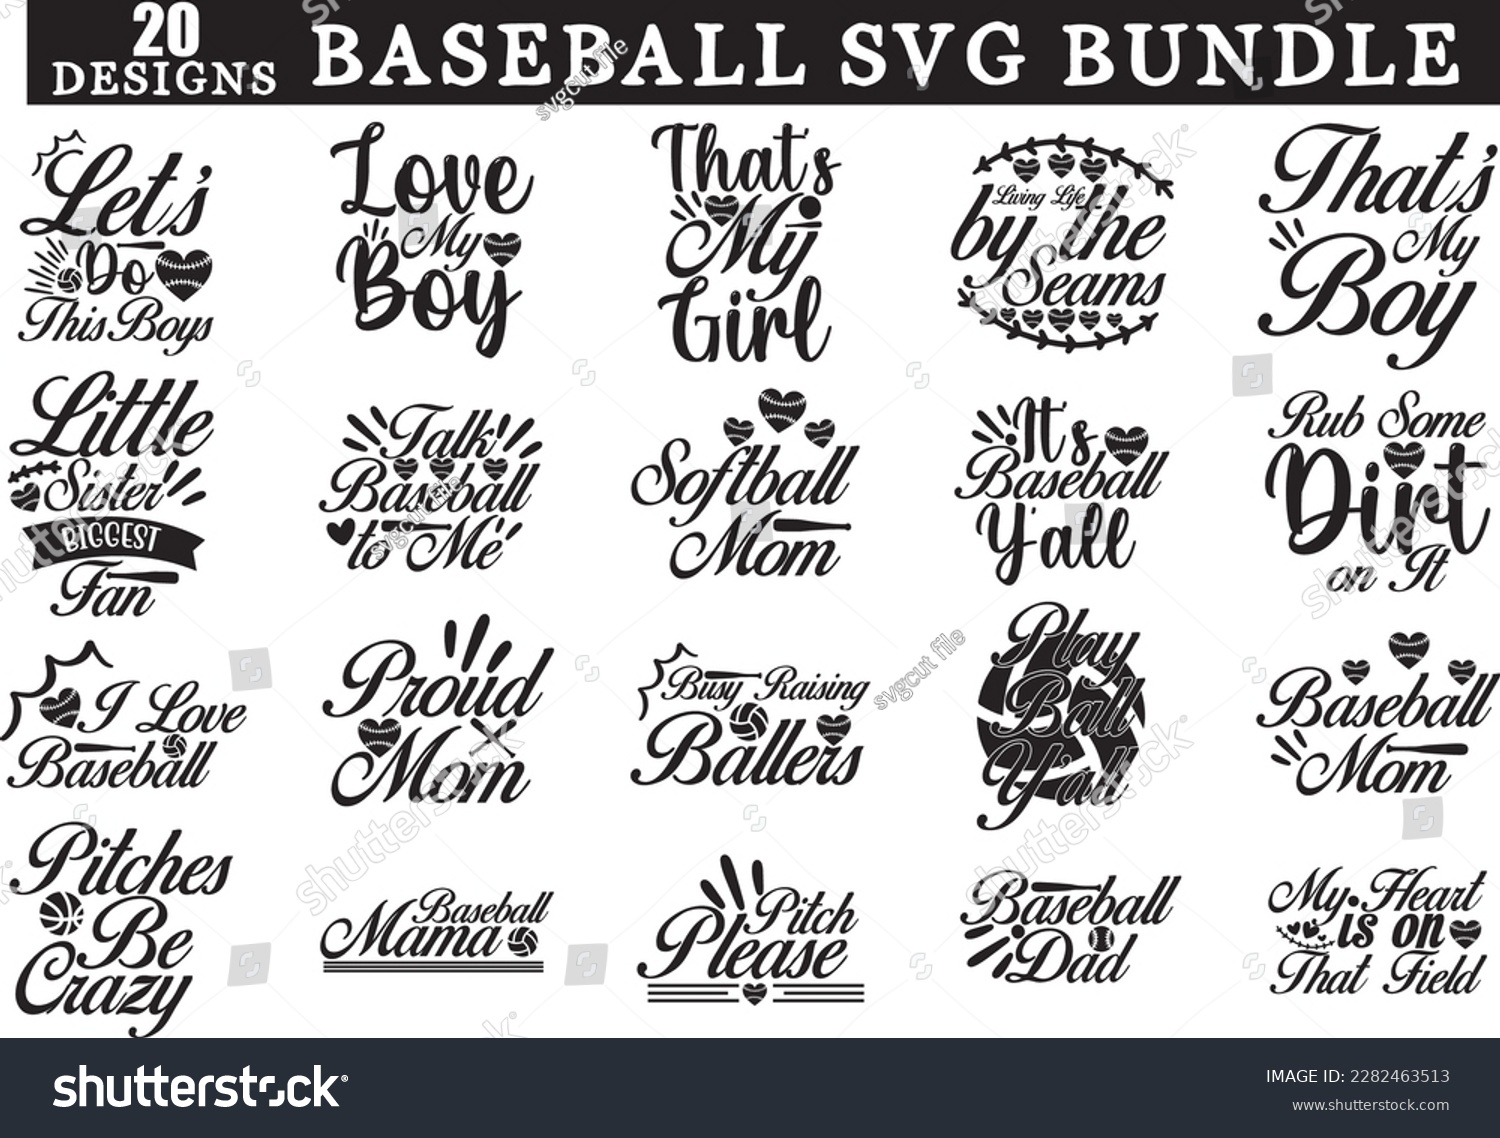 SVG of Baseball SVG bundle, Baseball Mom SVG Bundle svg